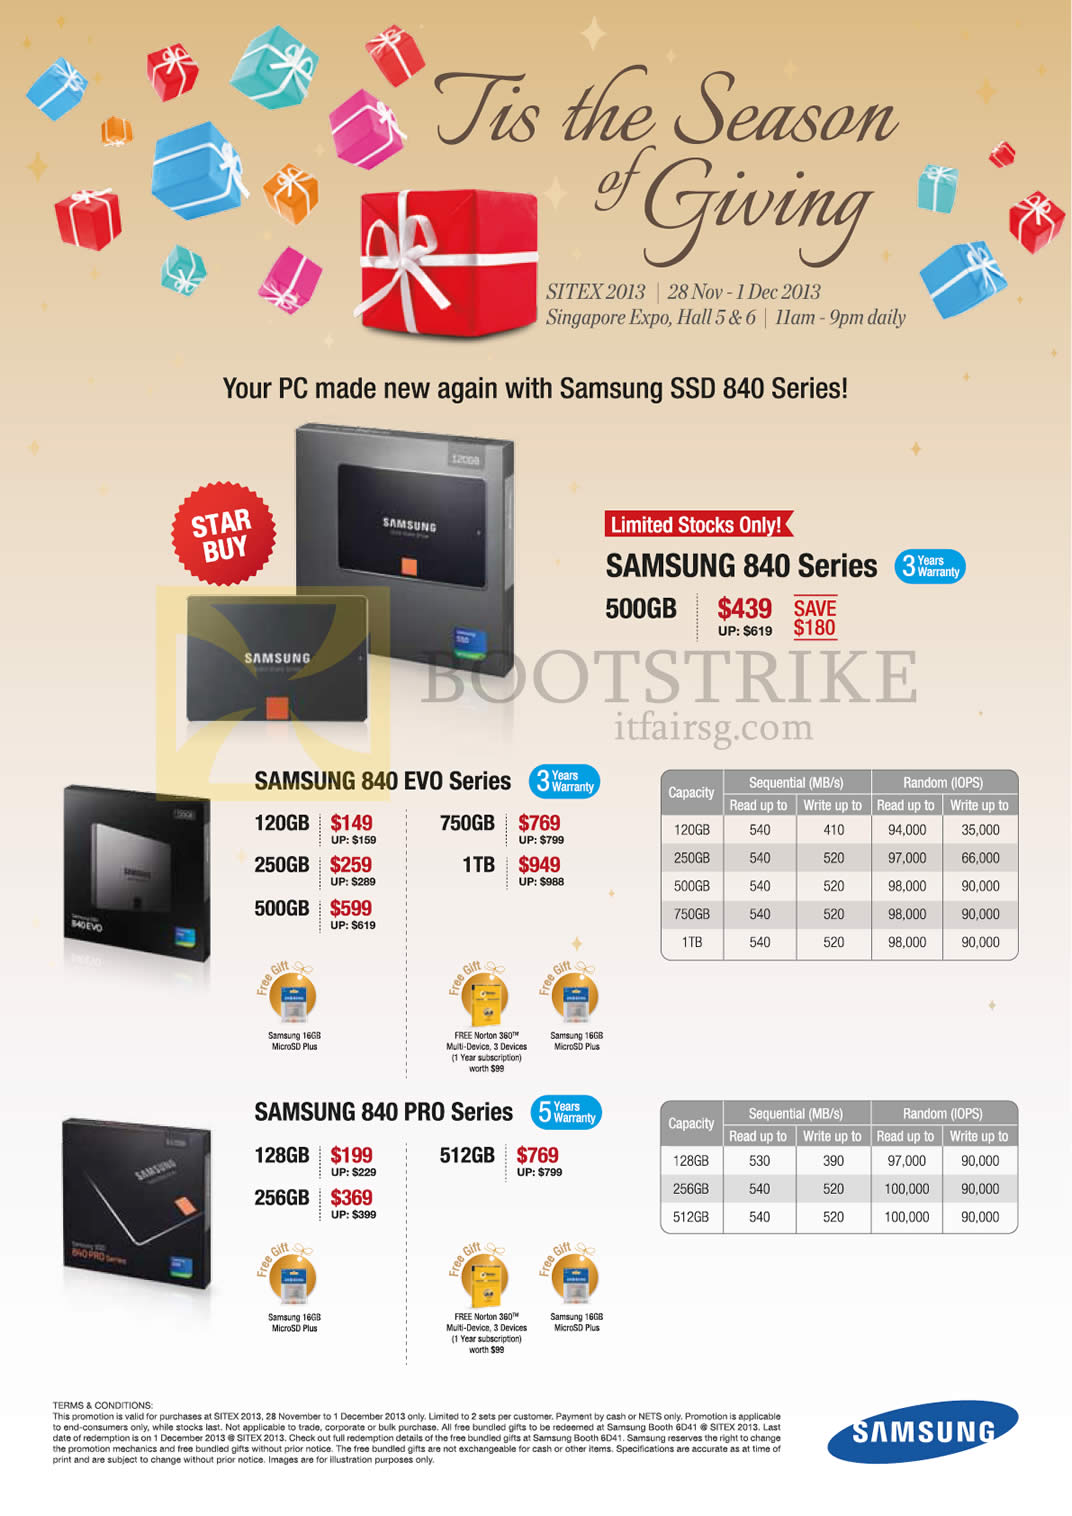 SITEX 2013 price list image brochure of Samsung SSD 840 500GB, Evo 120GB 250GB 500GB 750GB 1TB, 840 Pro 128GB 256GB 512GB